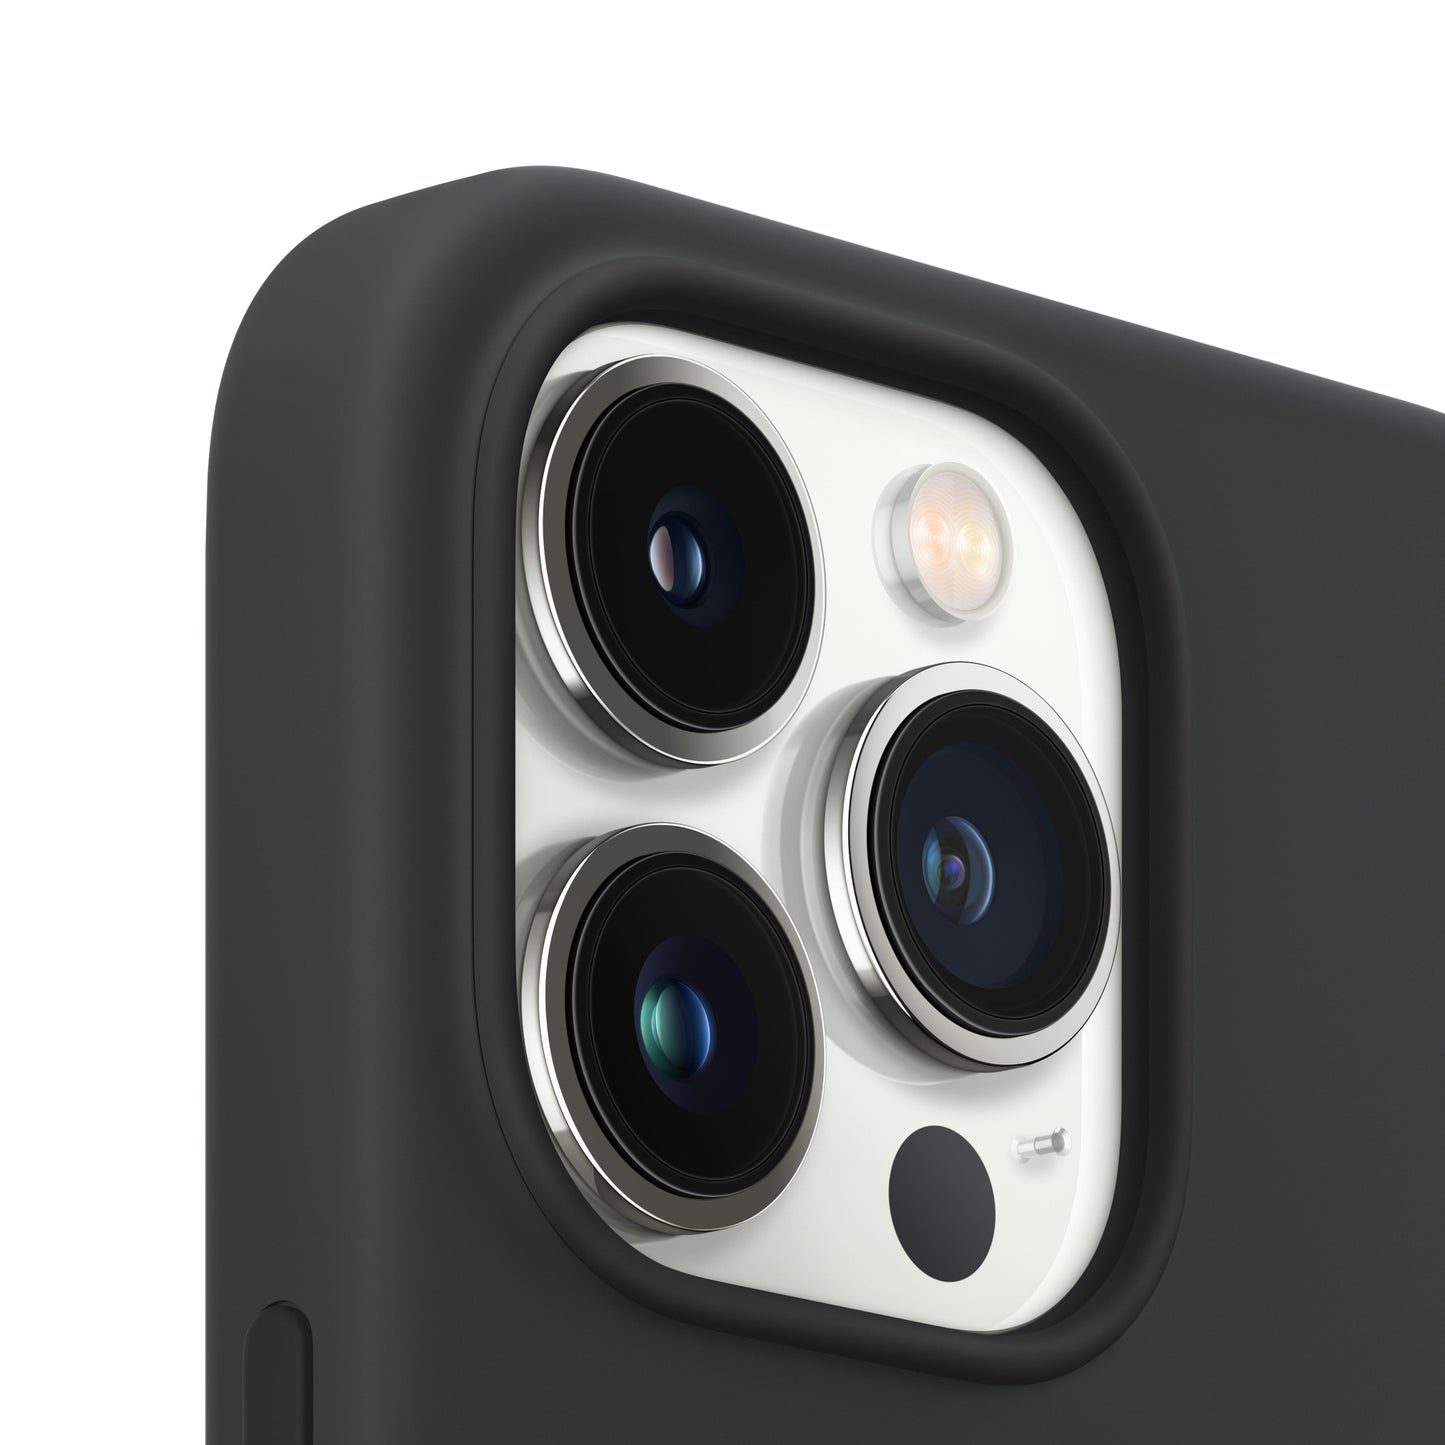 Estuche de silicona con MagSafe para el iPhone 13 Pro - Medianoche - Rossellimac